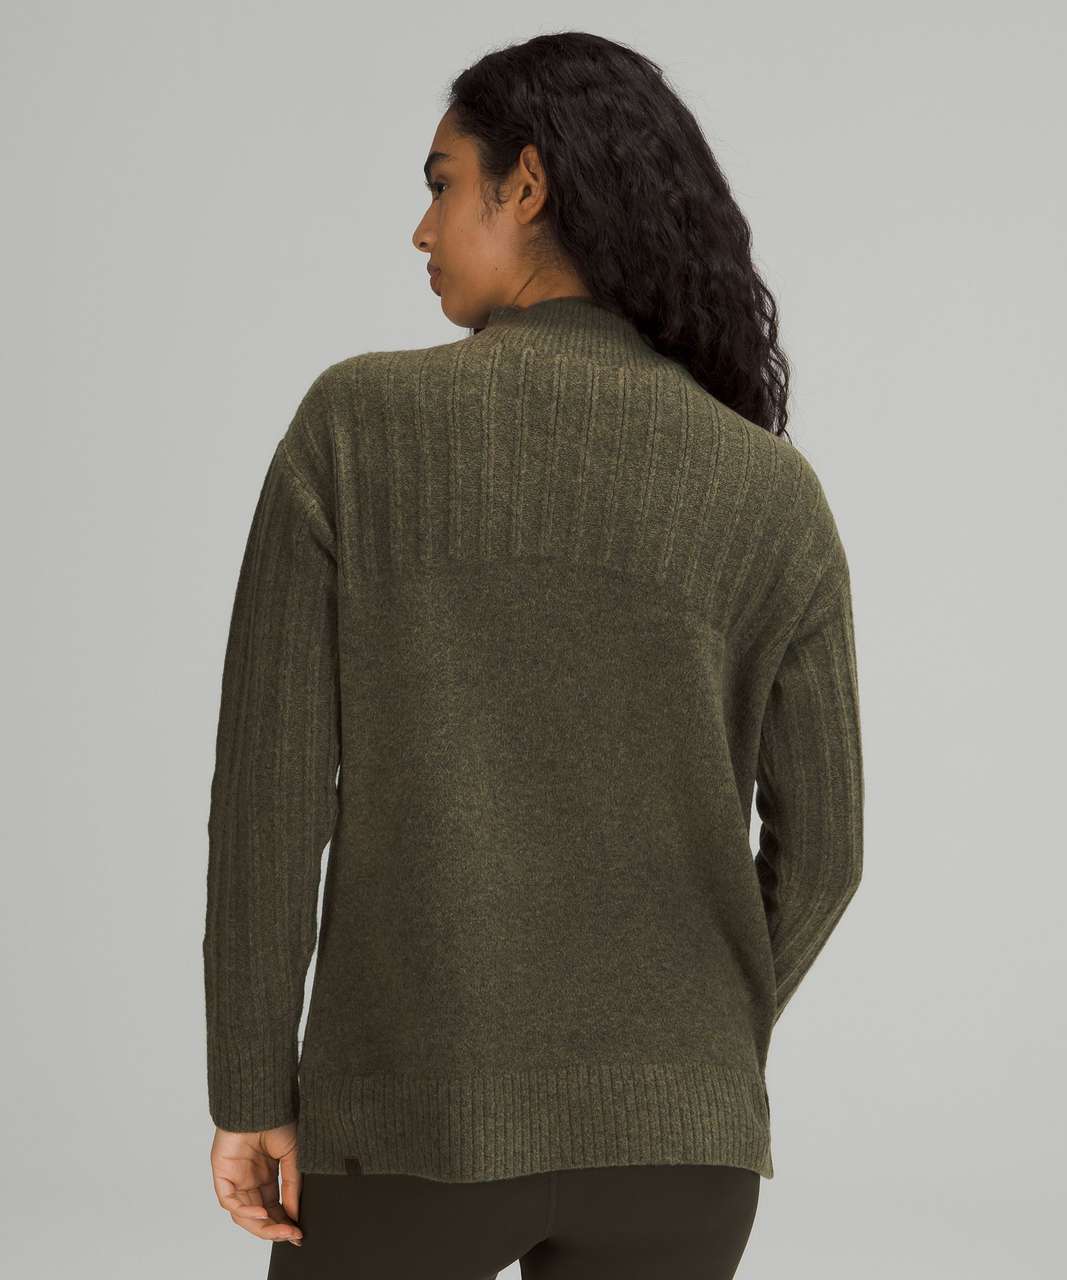 Lululemon Twin Rib Turtleneck Sweater - Heathered Dark Olive